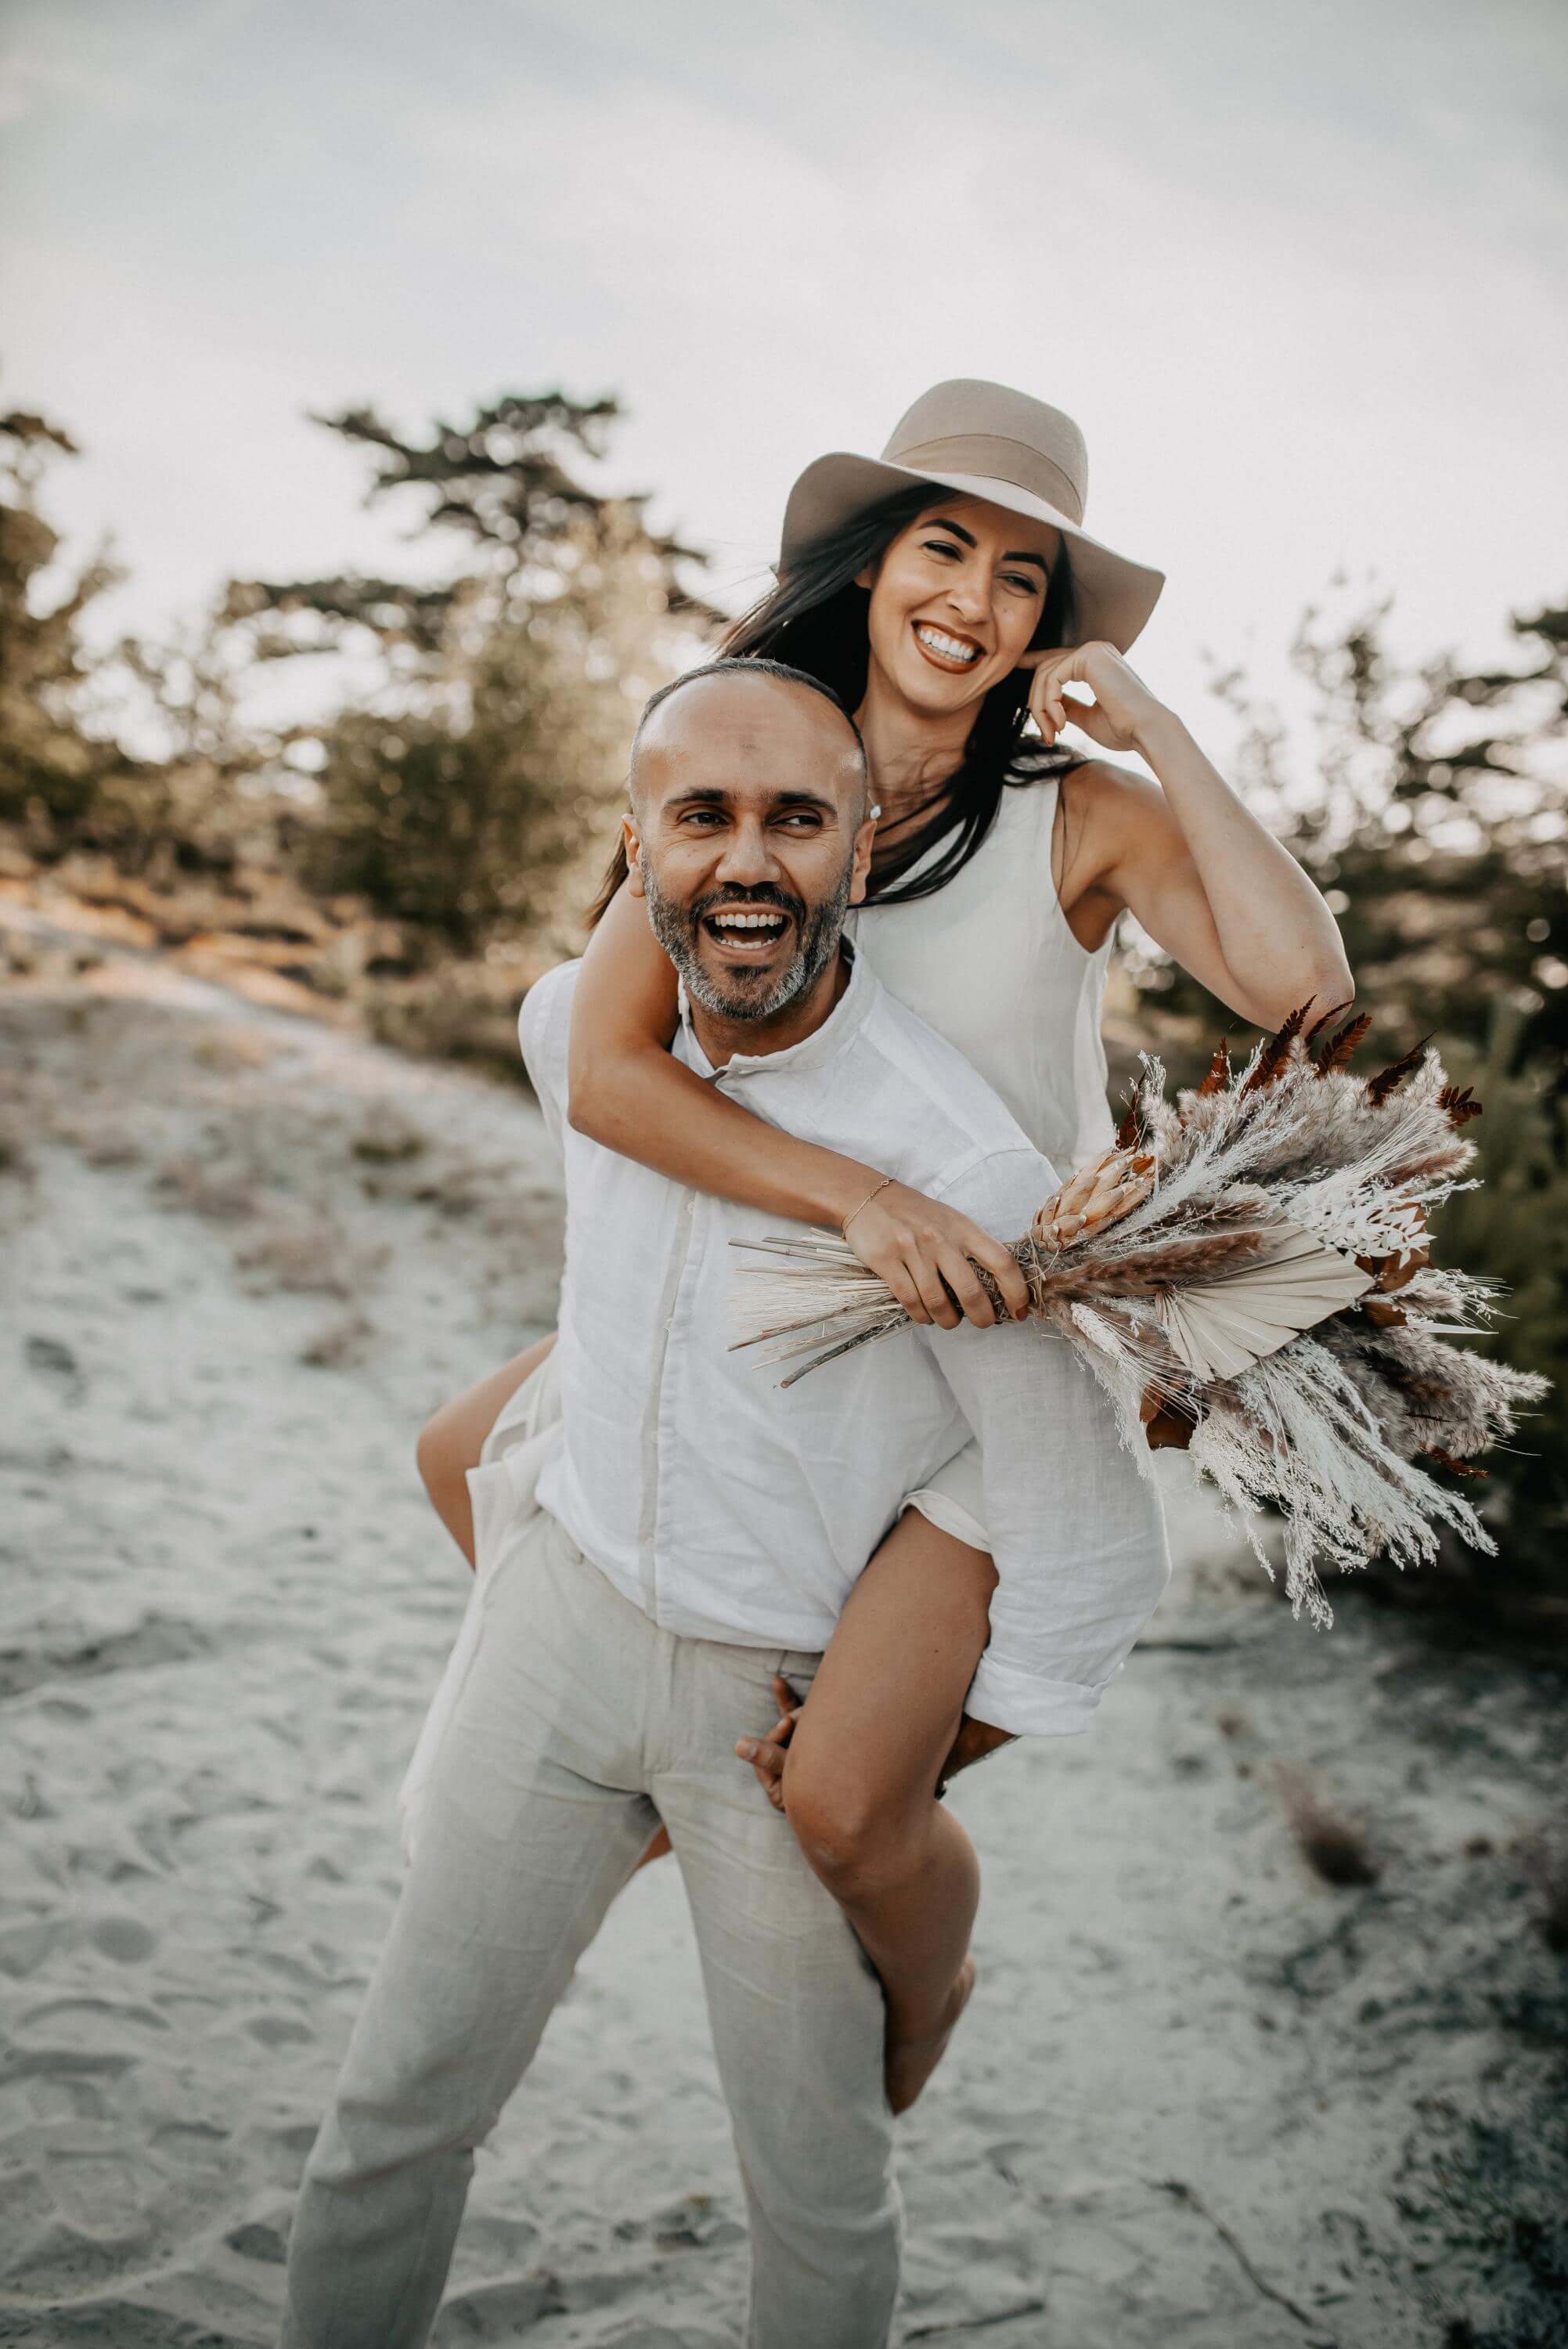 Bei gelöster Stimmung trägt ein Mann seine Frau mit Cowboy-Hut Huckepack auf dem Rücken, während beide in der sandigen Heide-Landschaft lachen.